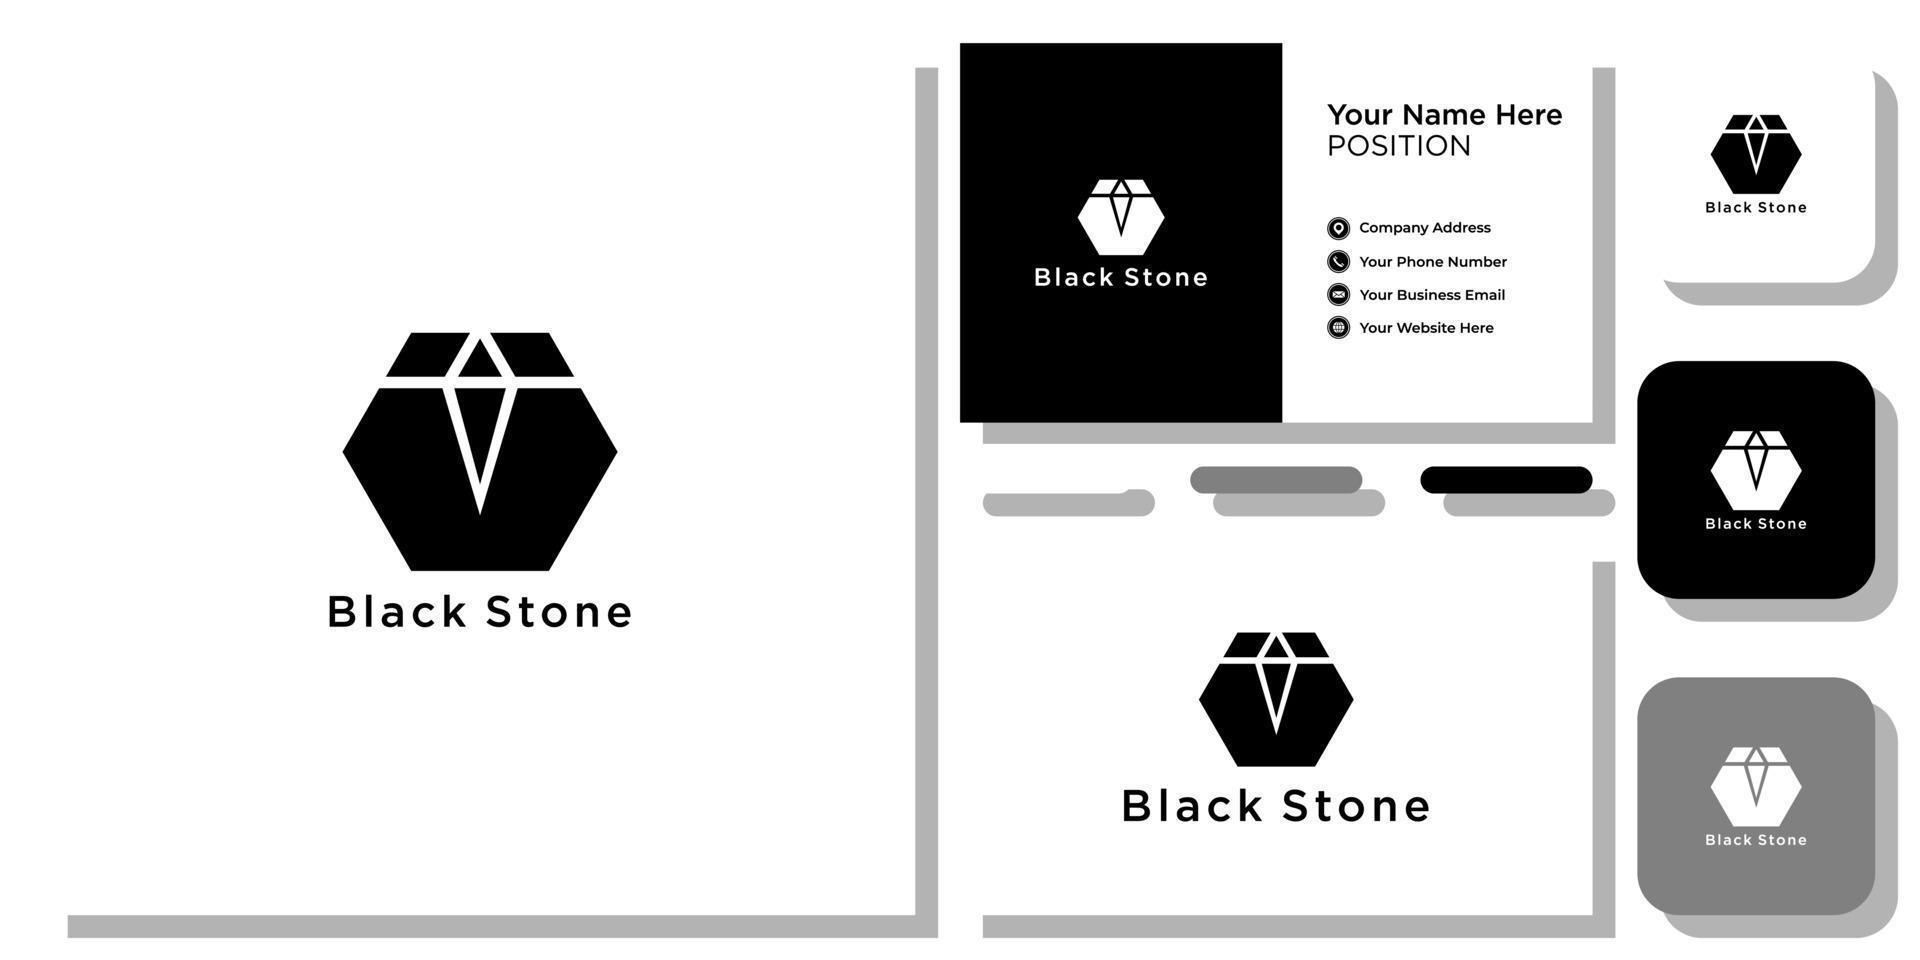 zwarte steen voor luxe sieraden levensstijl met sjabloon voor visitekaartjes vector